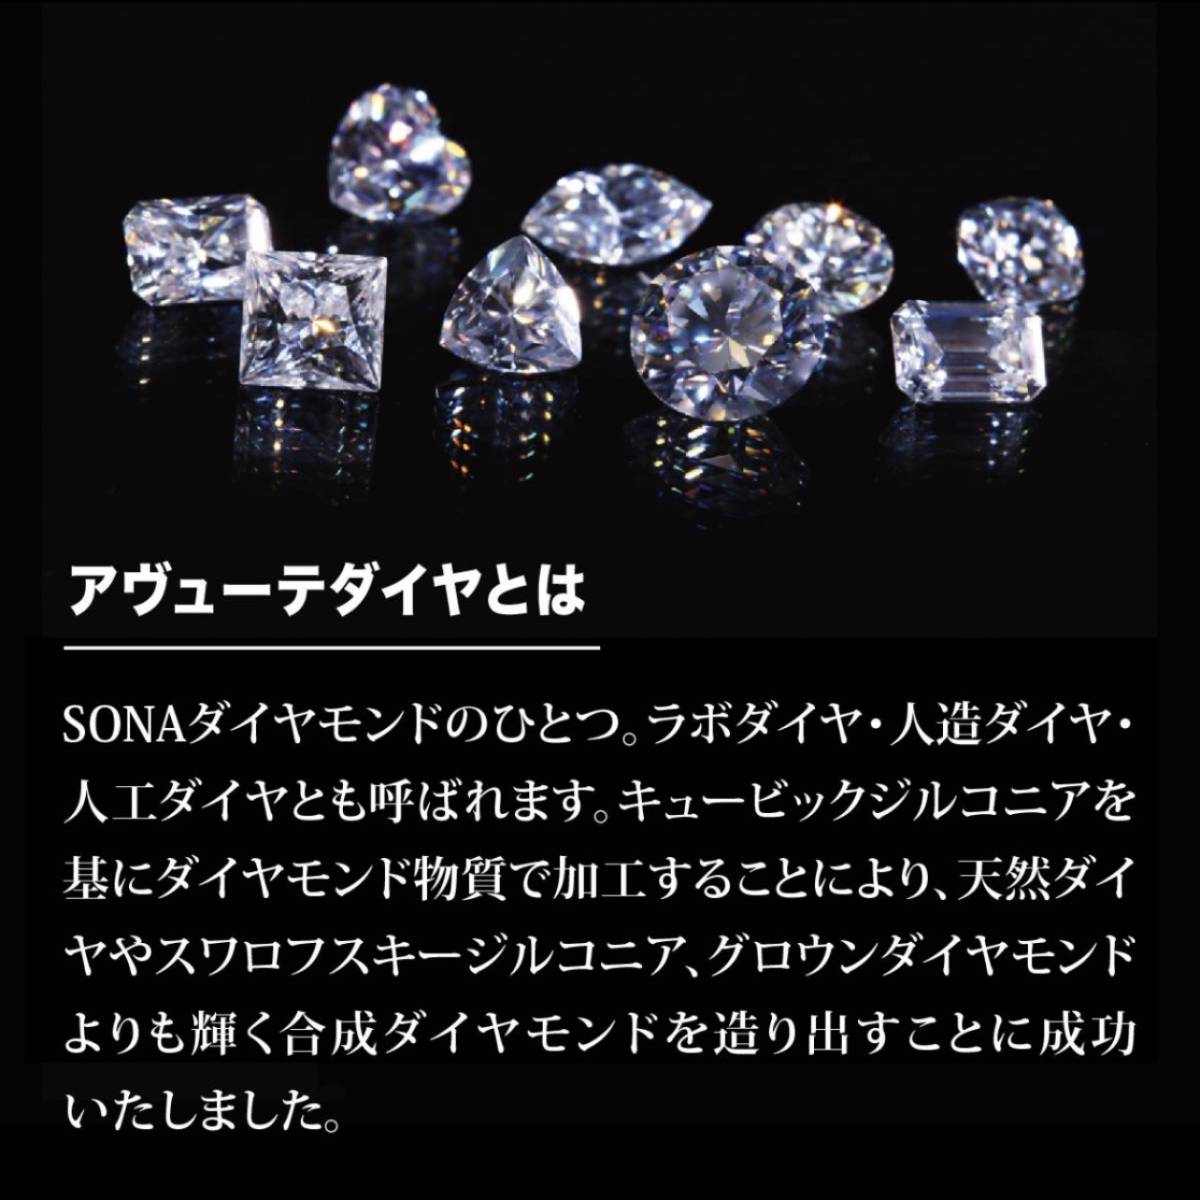  новый товар ◆ блеск   гарантия   дизайн   обруч    серьги   SONA алмаз   золотой ◆... мешочек    гарантийный талон    мужской   женский   кольцо    подарок 